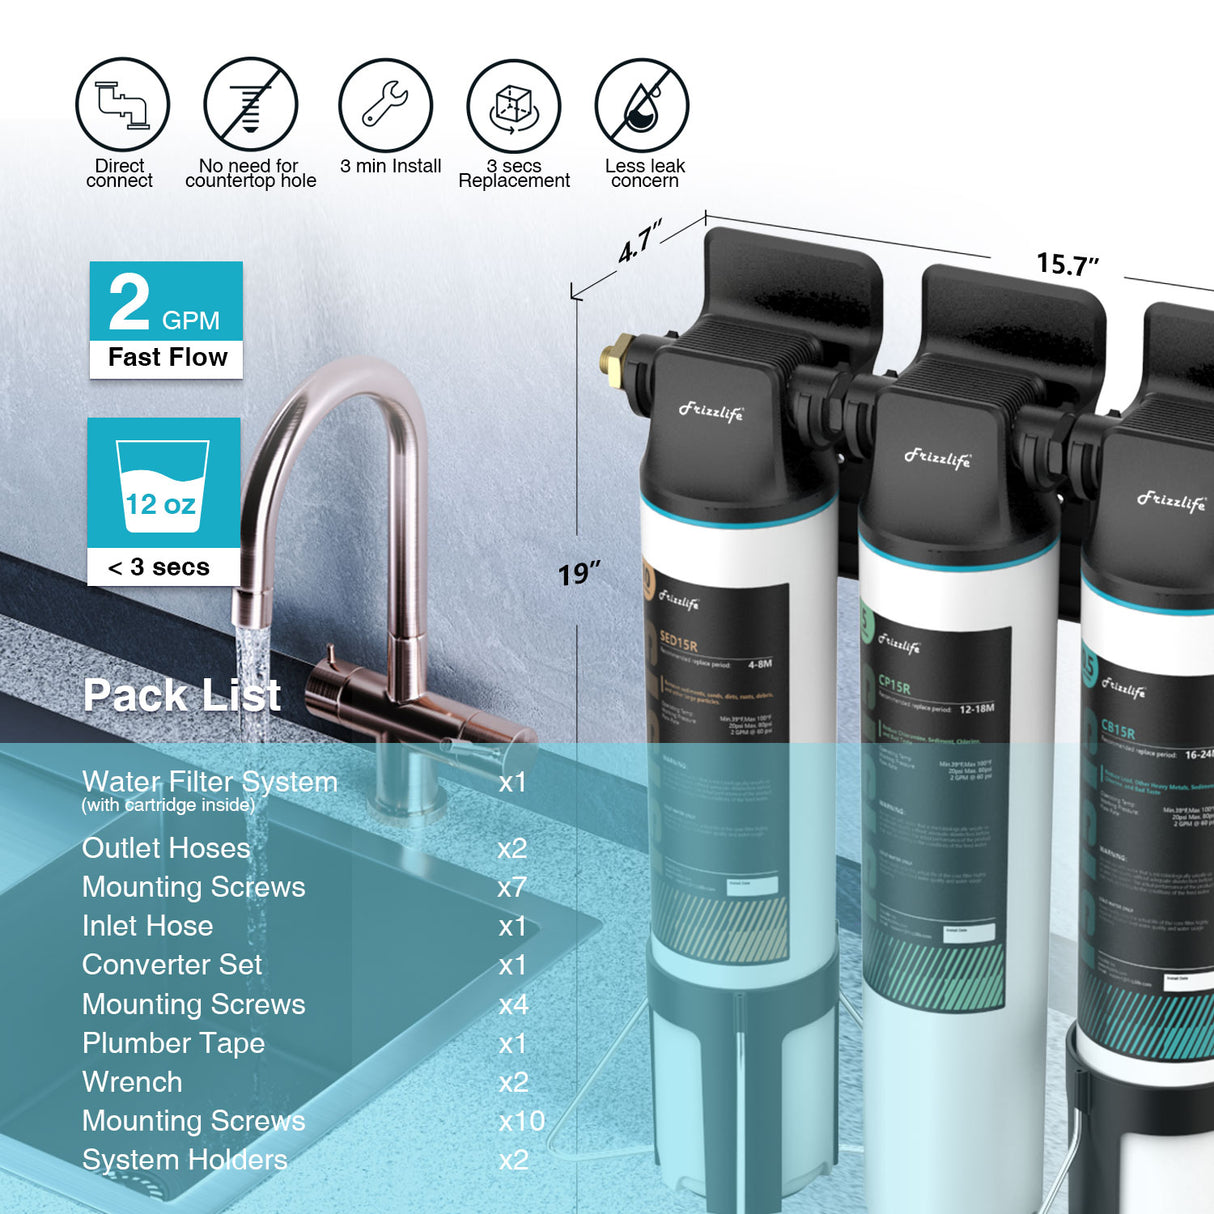 Frizzlife TW15 Système de filtre à eau sous évier, éléments certifiés NSF/ANSI 53 et 42, réduit 99,99 % du plomb, du chlore, de la chloramine, du fluorure, du mauvais goût et des odeurs